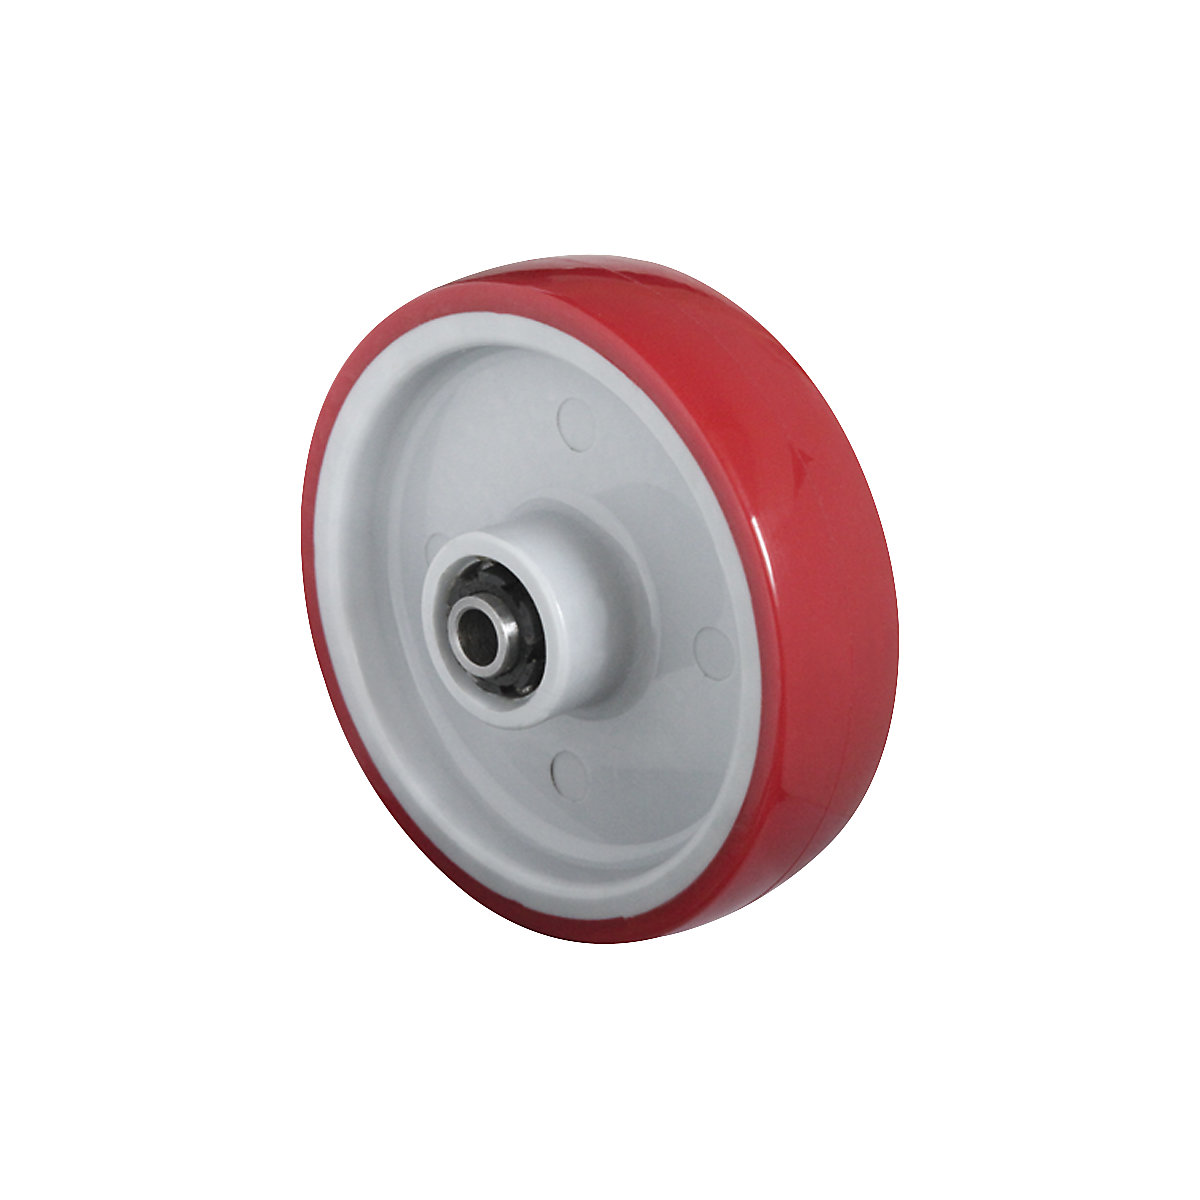 Koleso PU, červené na polyamidovom disku, klzné ložisko z ušľachtilej ocele, od 2 ks, Ø x šírka kolesa 200 x 50 mm-1